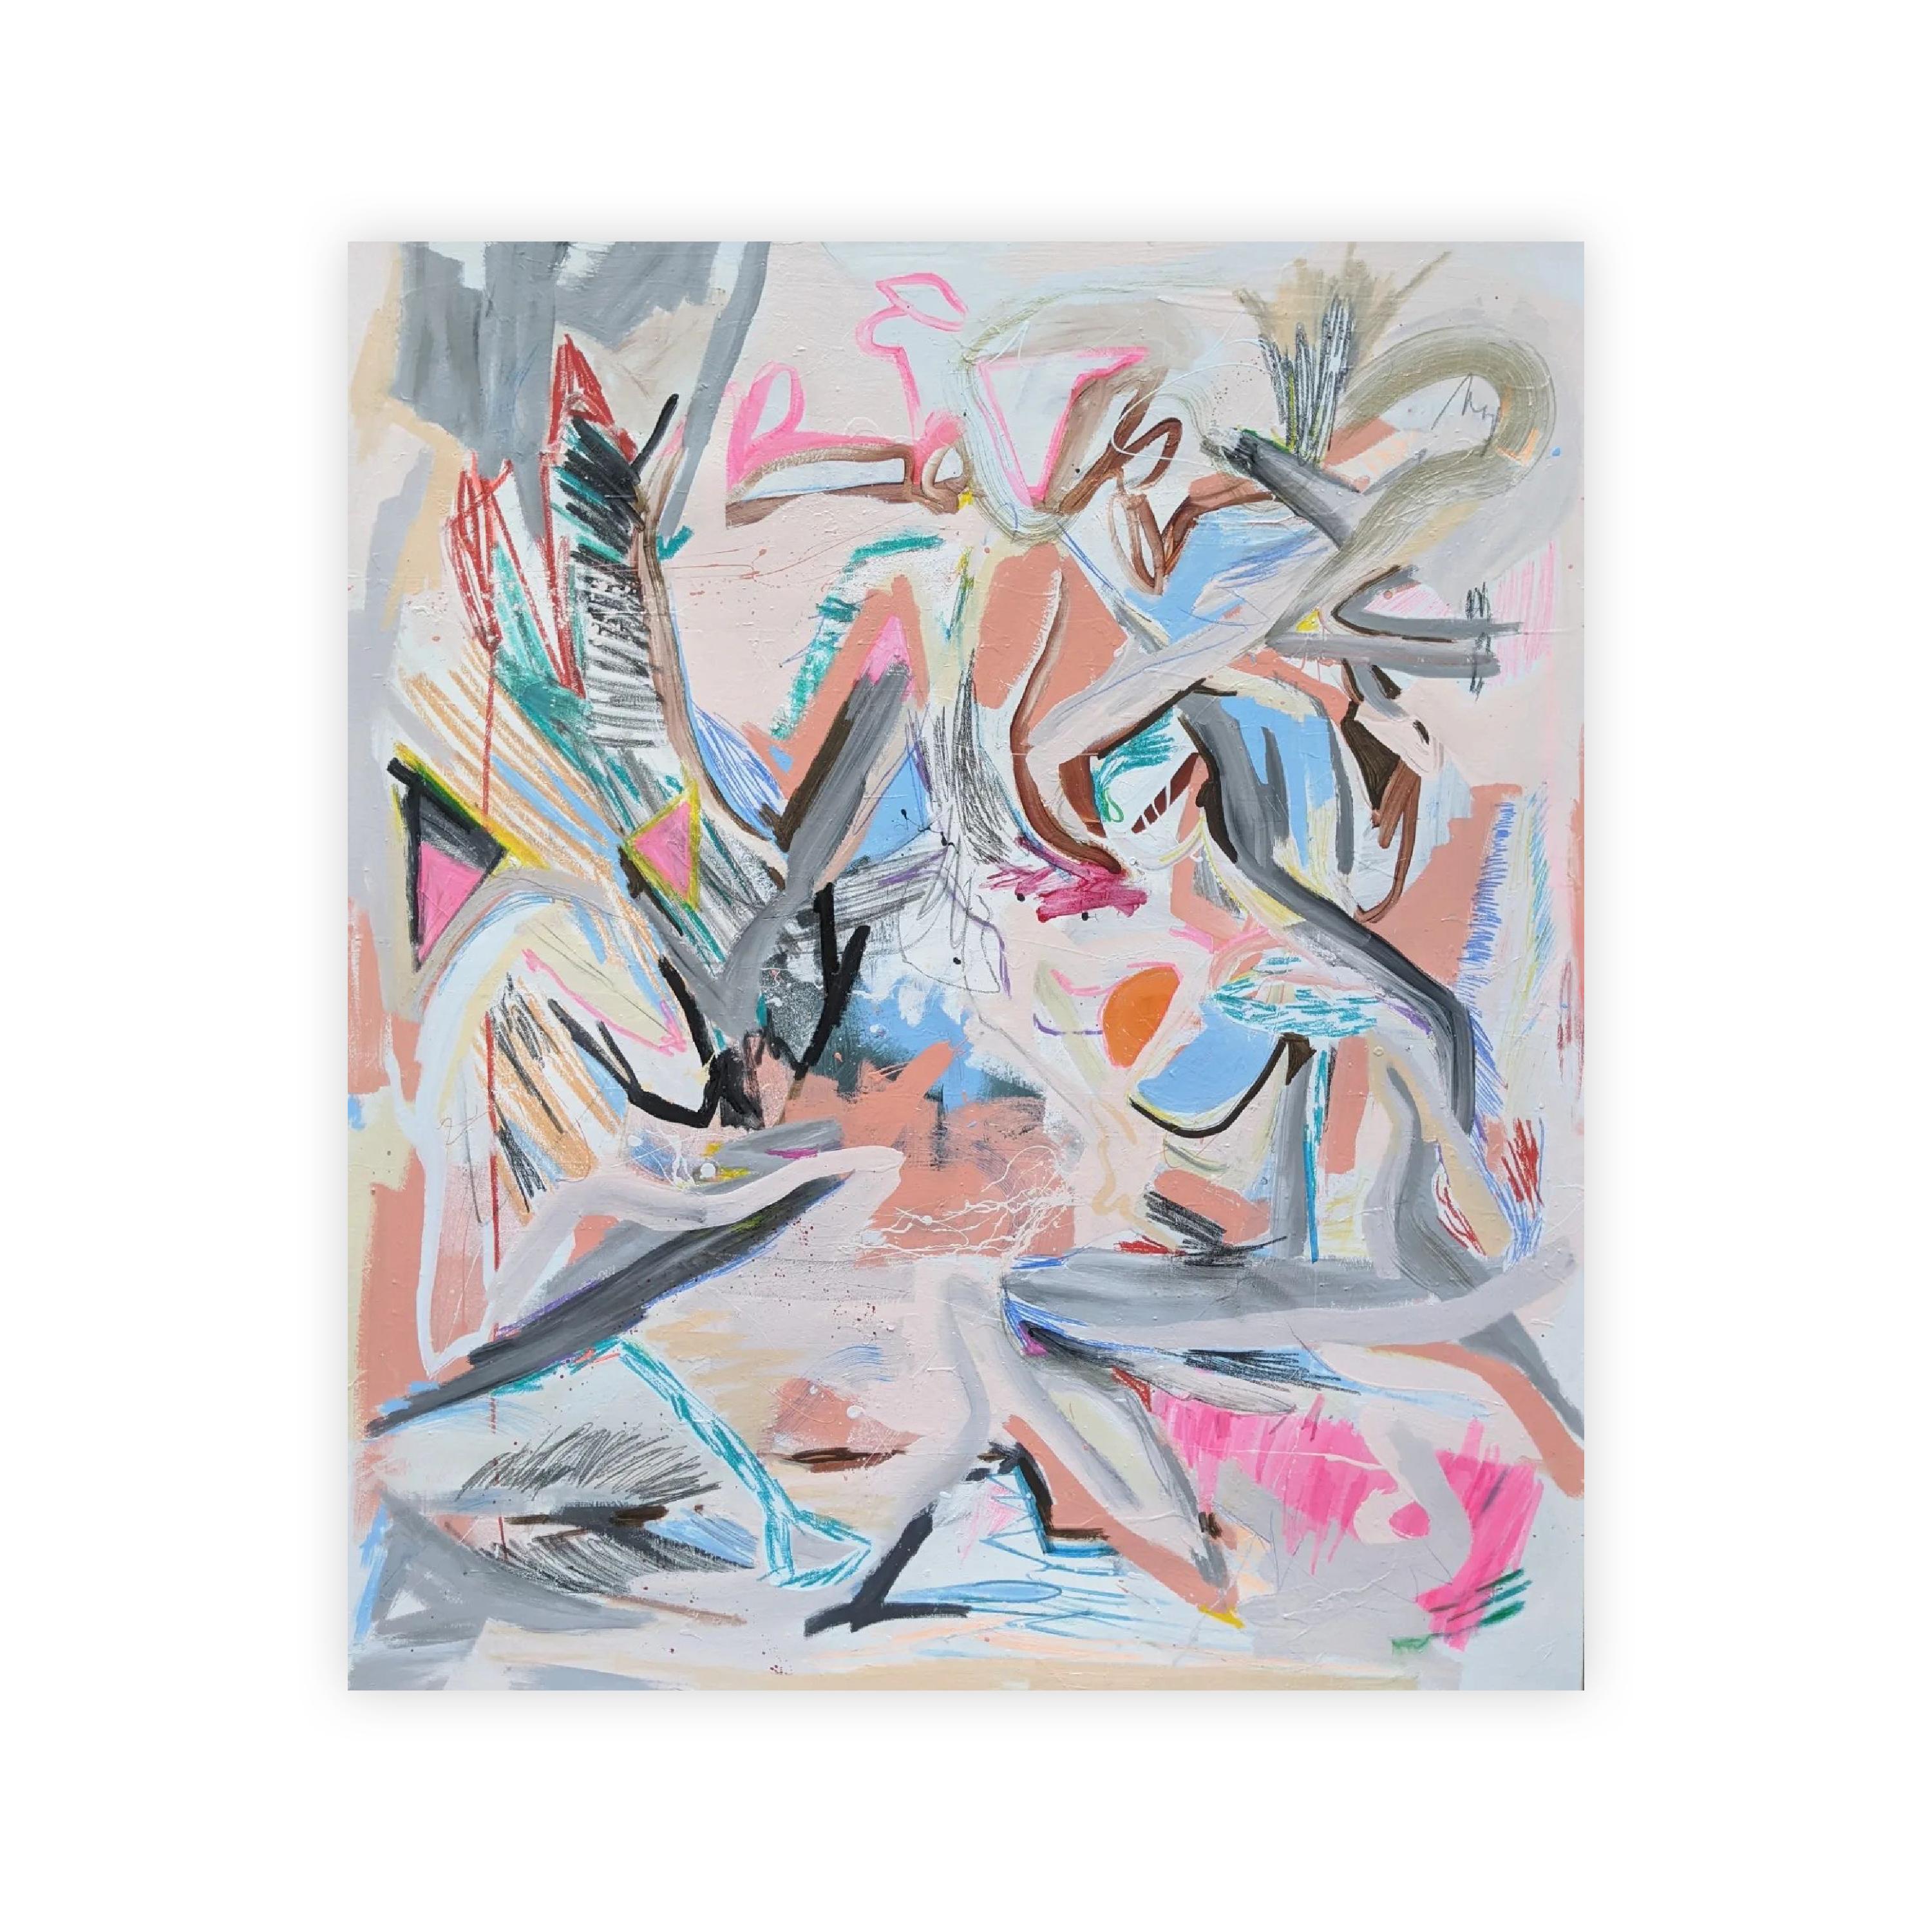 Abstraktes Gemälde von Joseph Conrad-Ferm. Die dynamische Komposition umfasst sowohl gedämpfte Striche in Grau und Rosa als auch lebhafte Kratzer und Kritzeleien.

Alle Verkäufe sind endgültig.  Bitte kontaktieren Sie uns für maßgeschneiderte